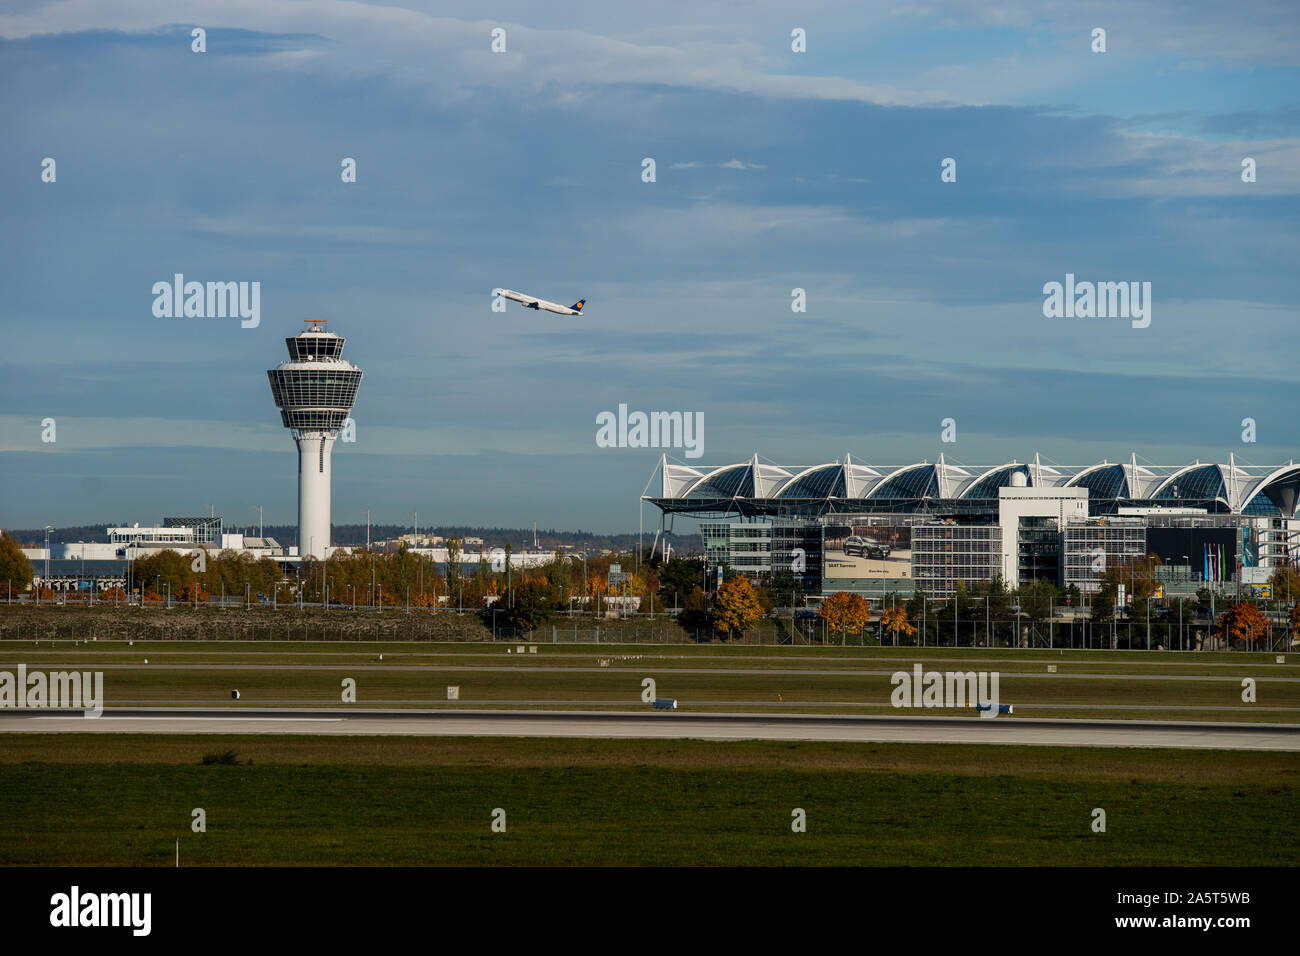 Launching plane at munich airport Stock Photo